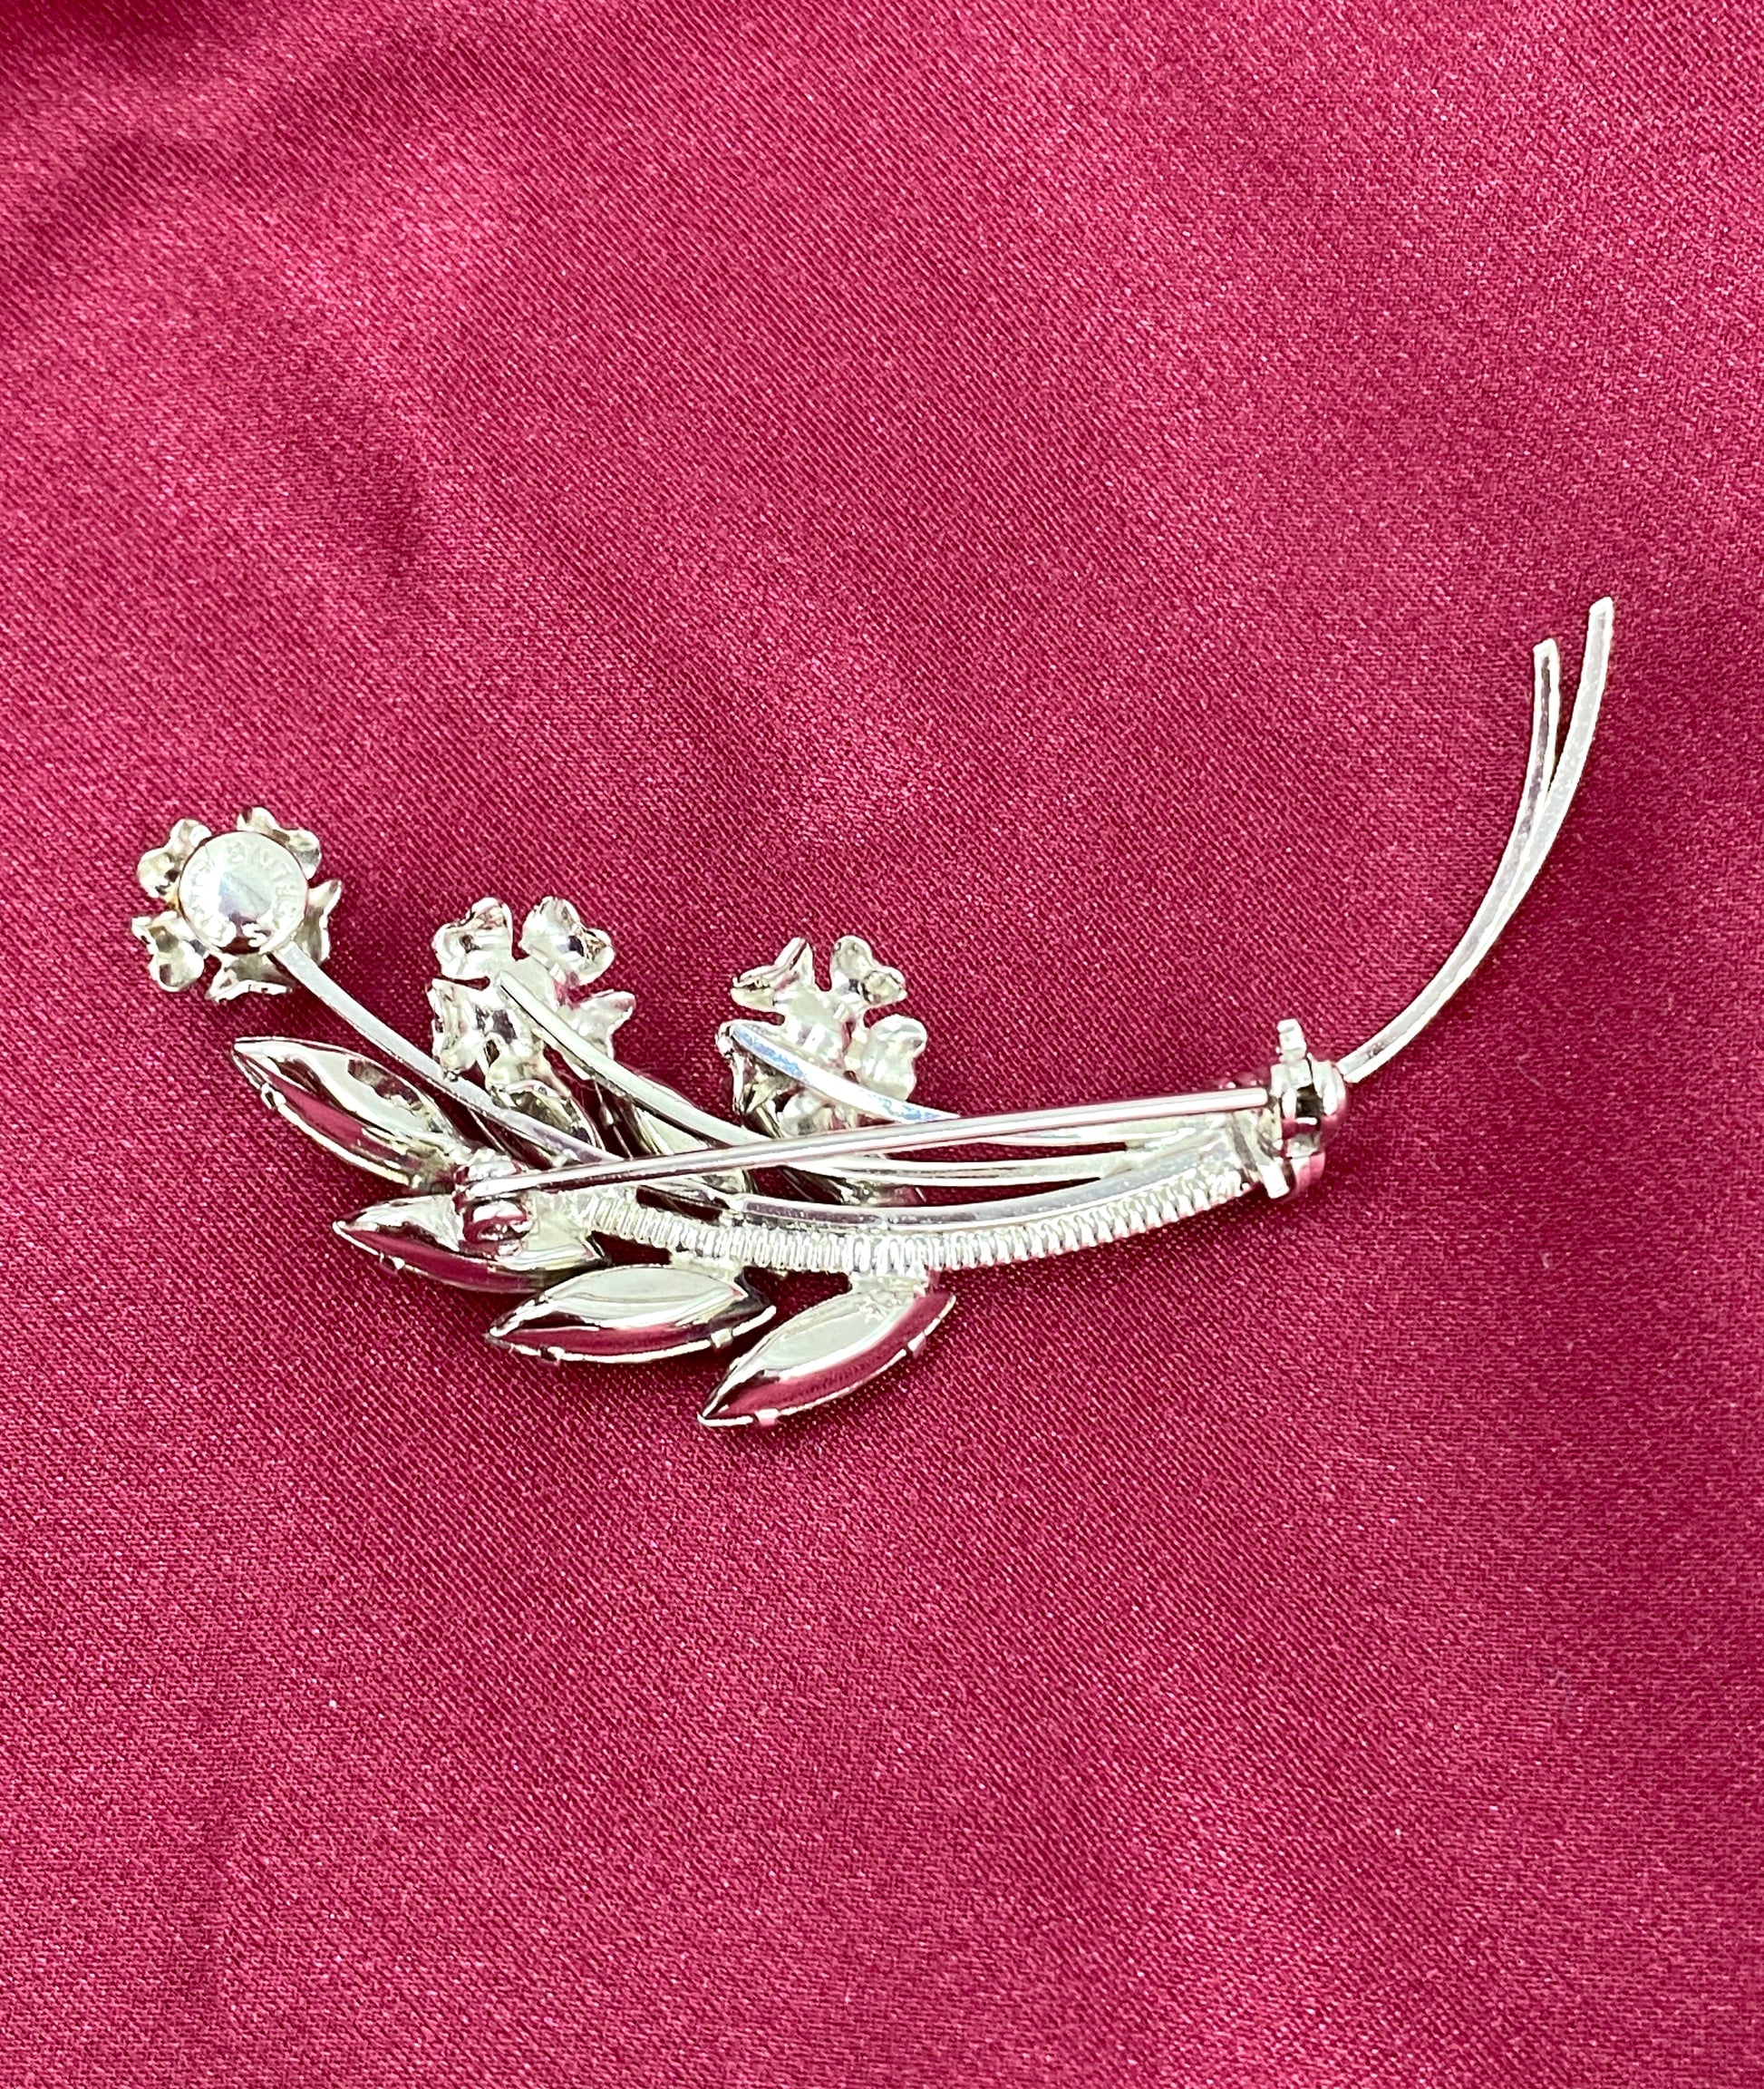 Vintage 1960s Sterling Silver Rhinestone Floral Brooch & Earrings Set